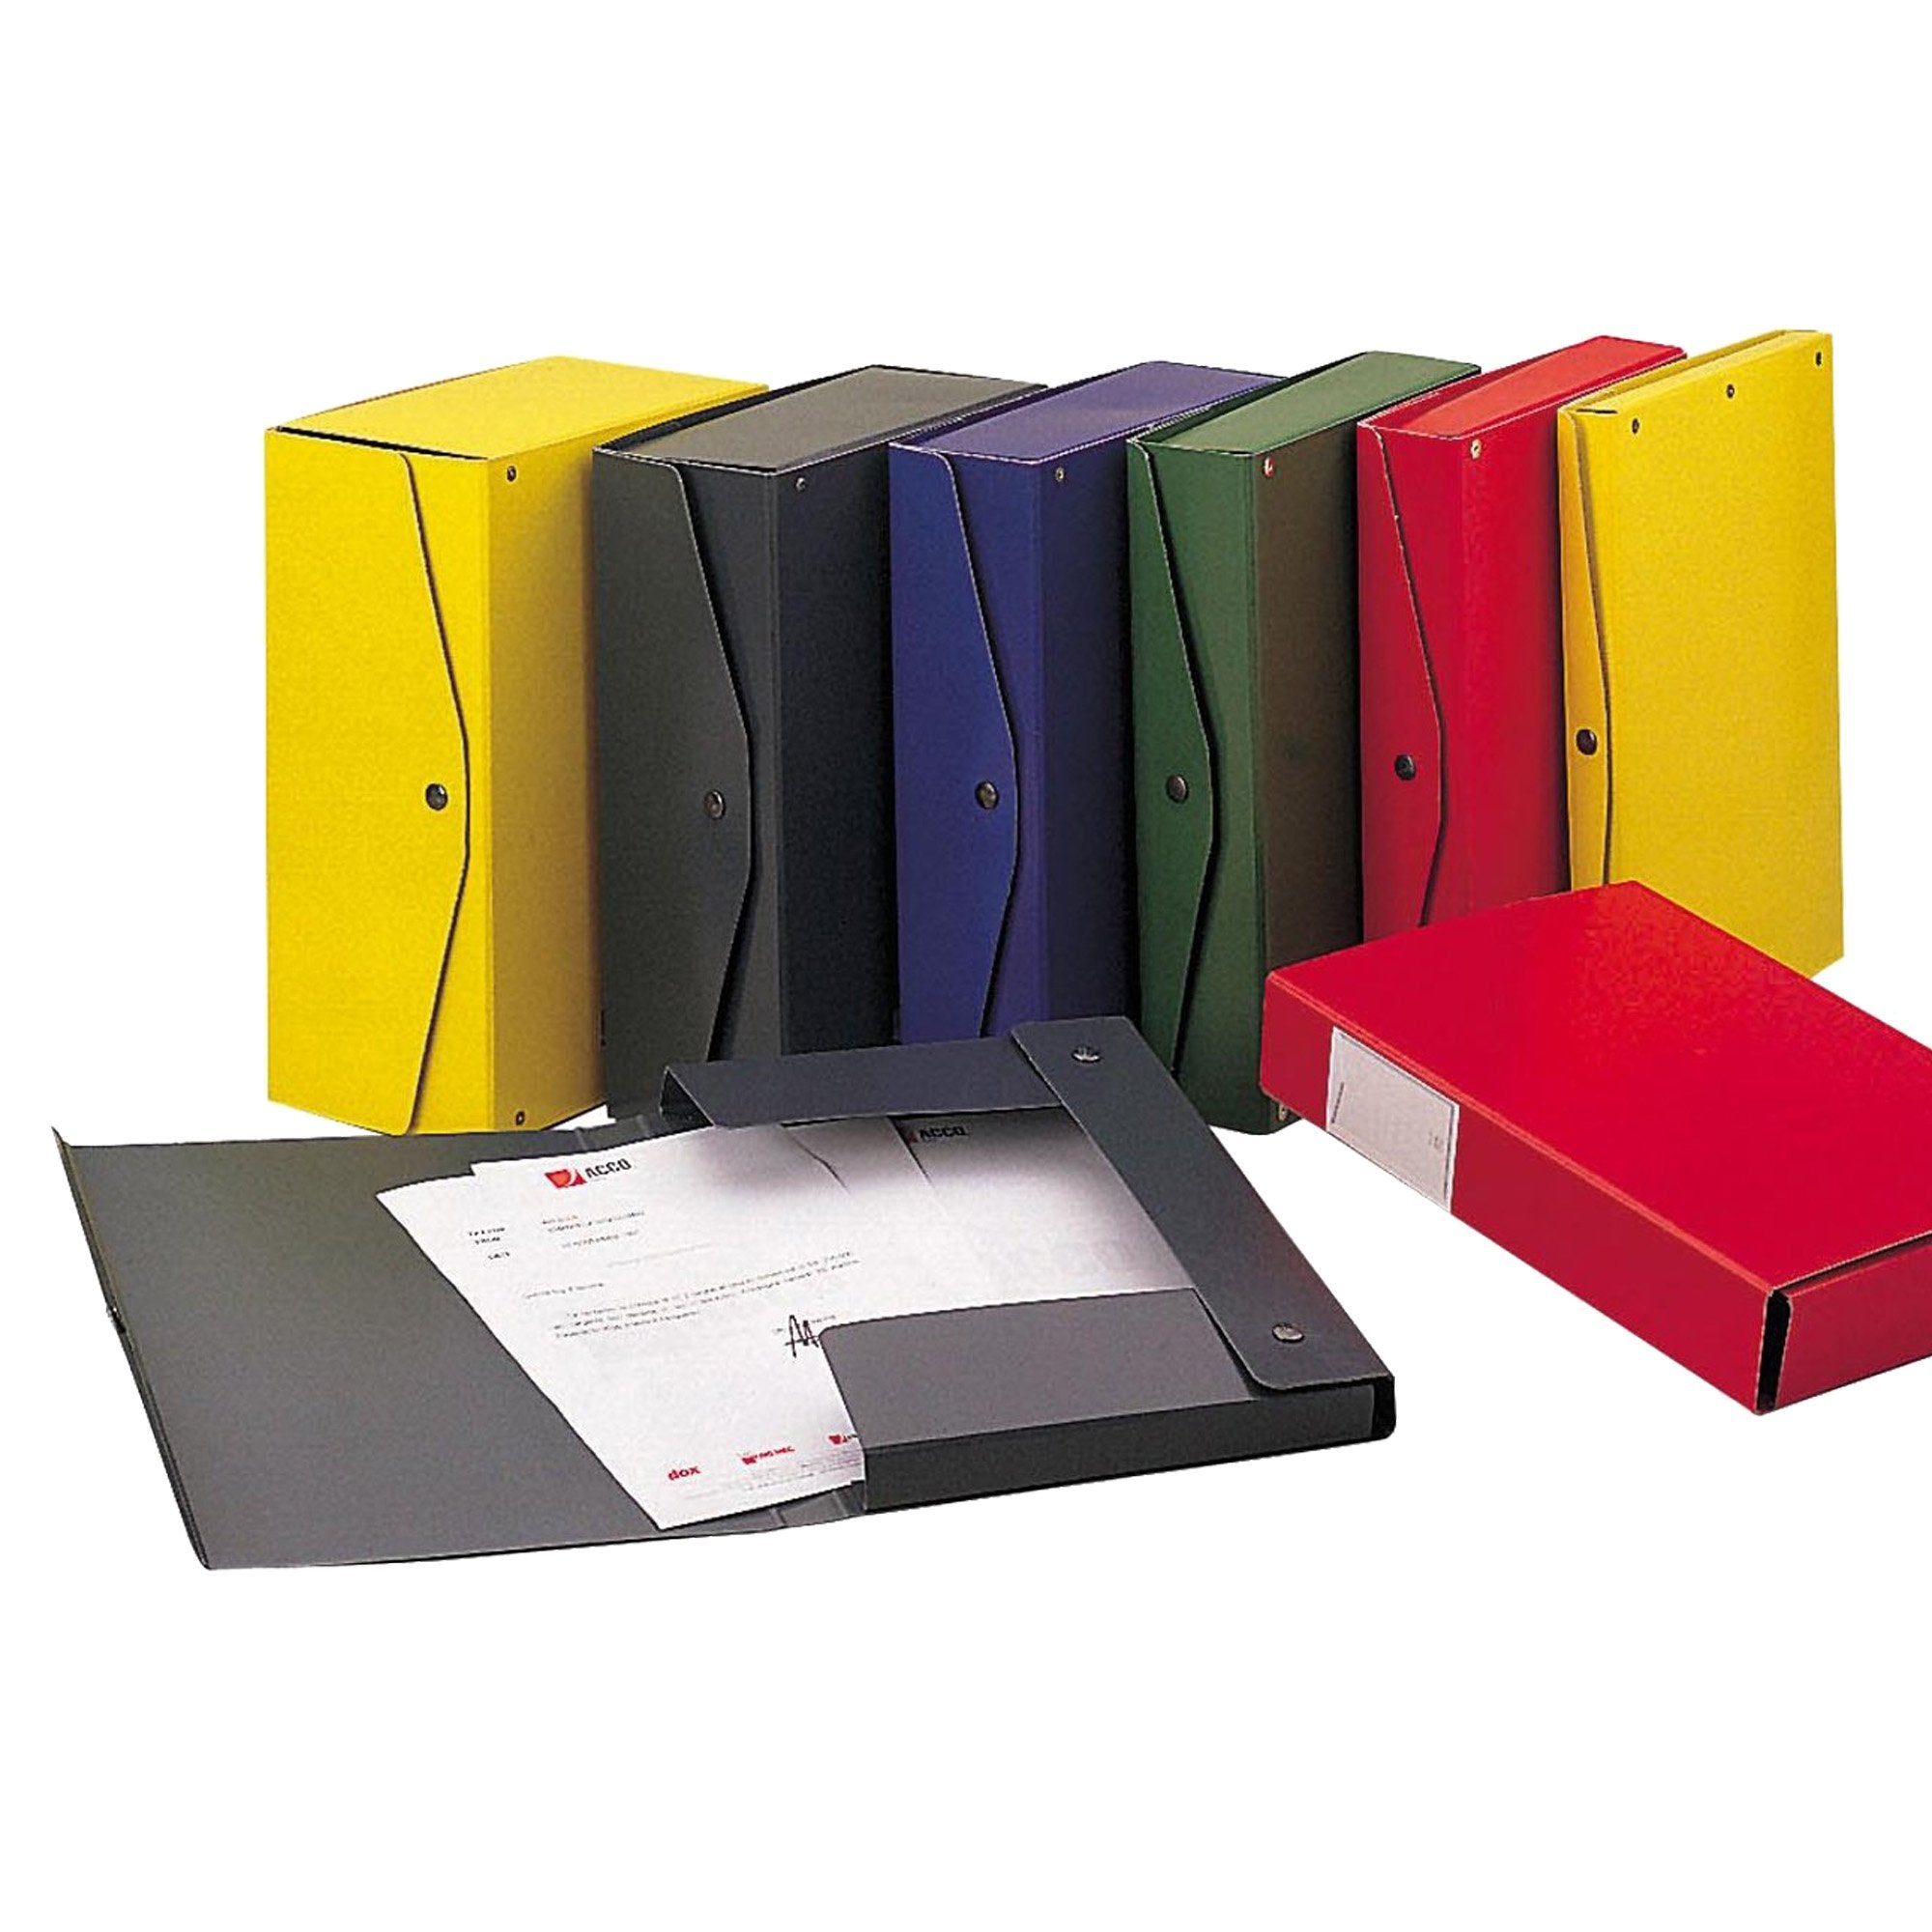 king-mec-scatola-archivio-project-10-giallo-25x35cm-dorso-10cm